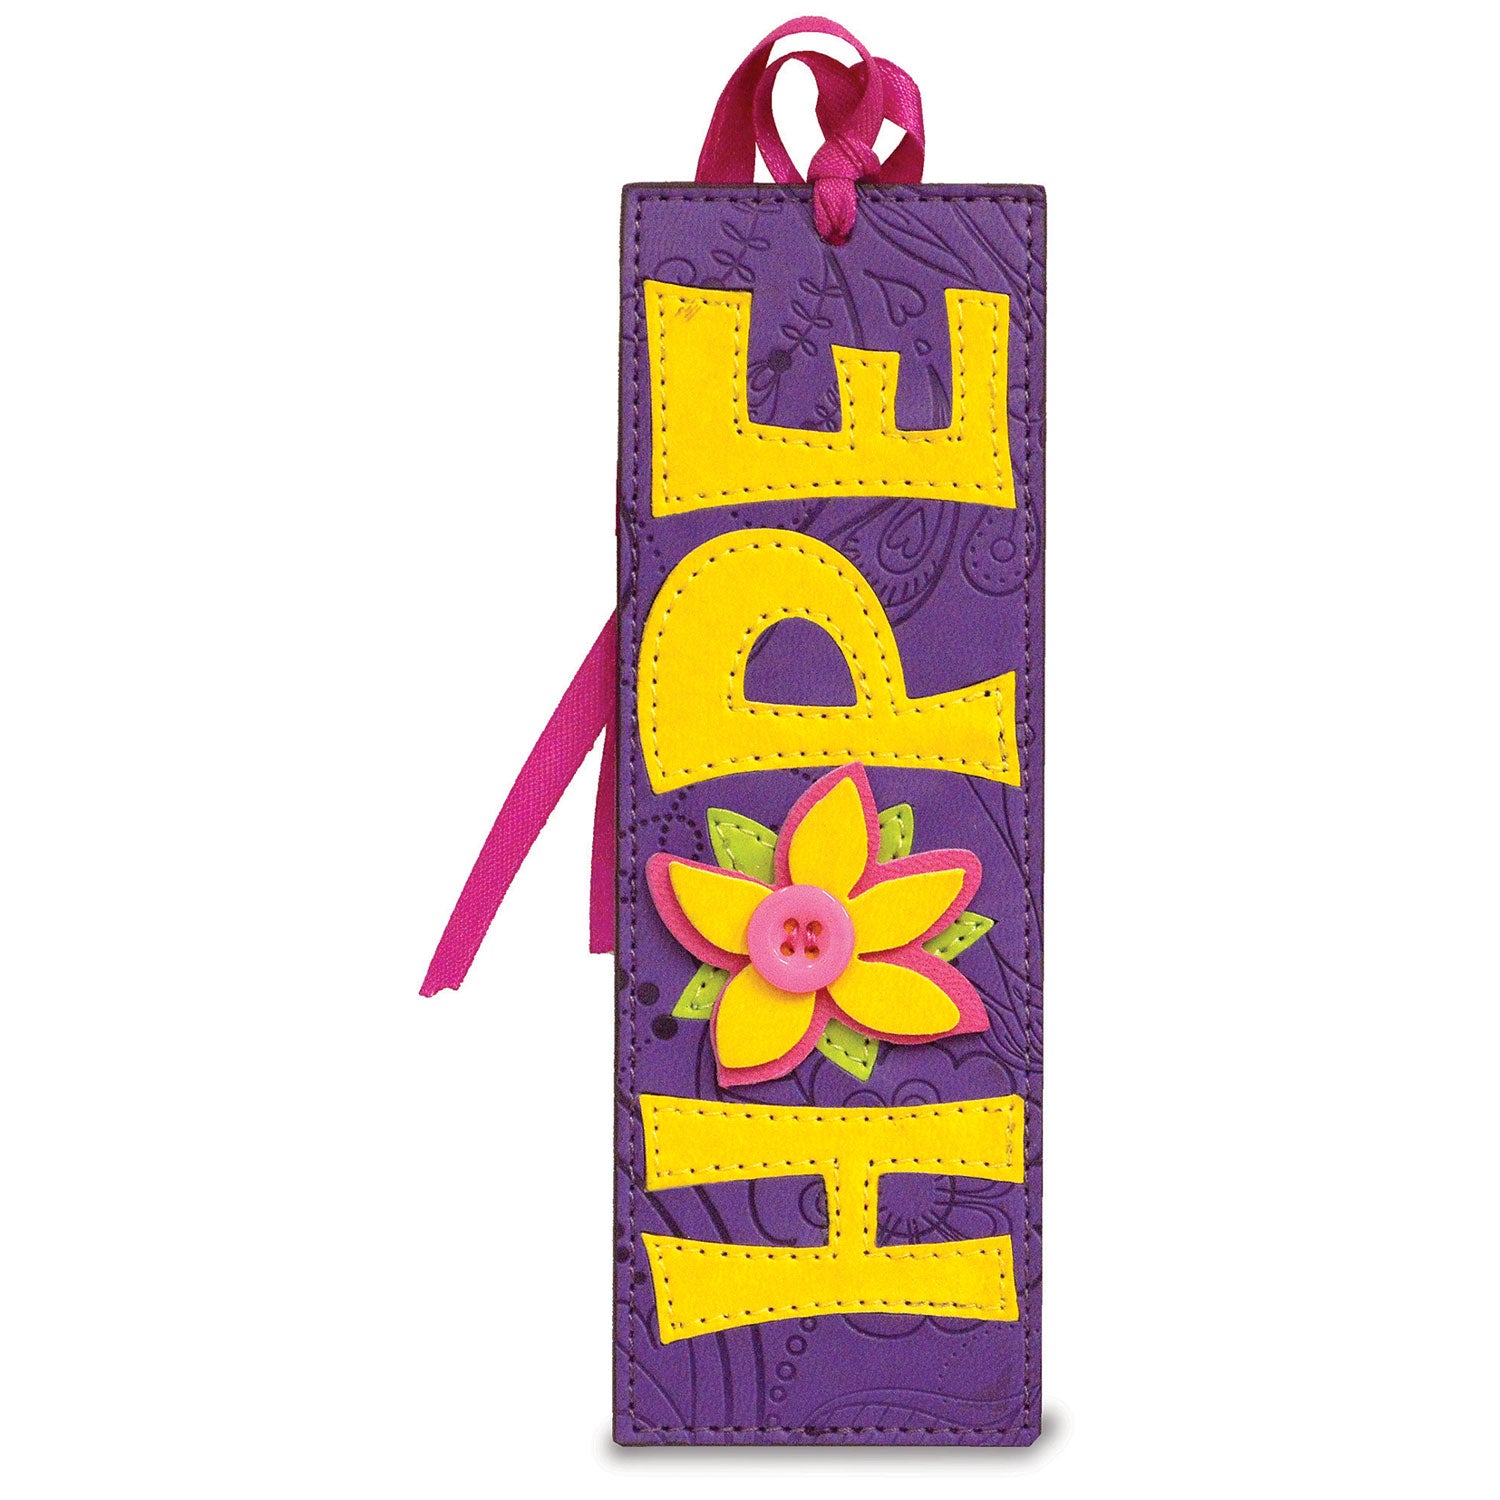 Divine Details: Bookmark - "HOPE"